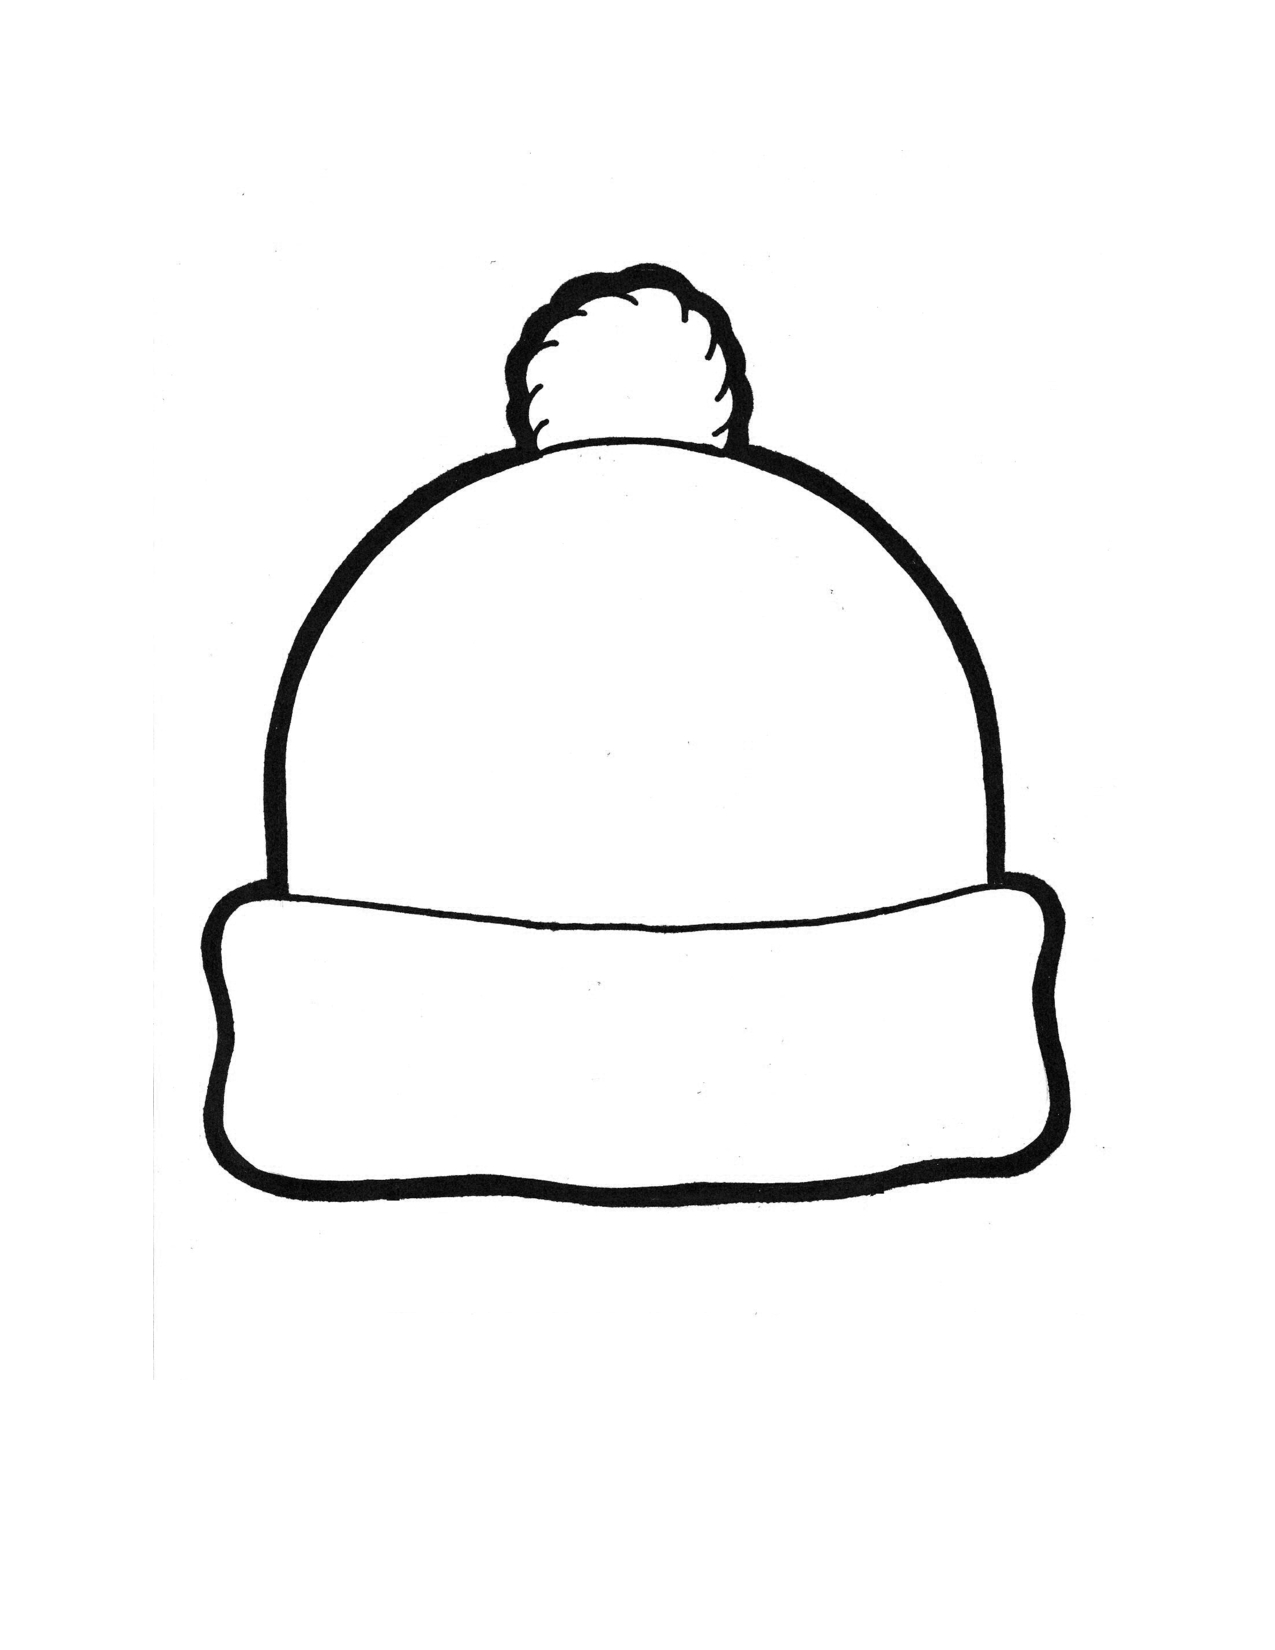 15 Snowman Hat Template Images - Printable Snowman Hat Pattern - Free Printable Snowman Hat Templates